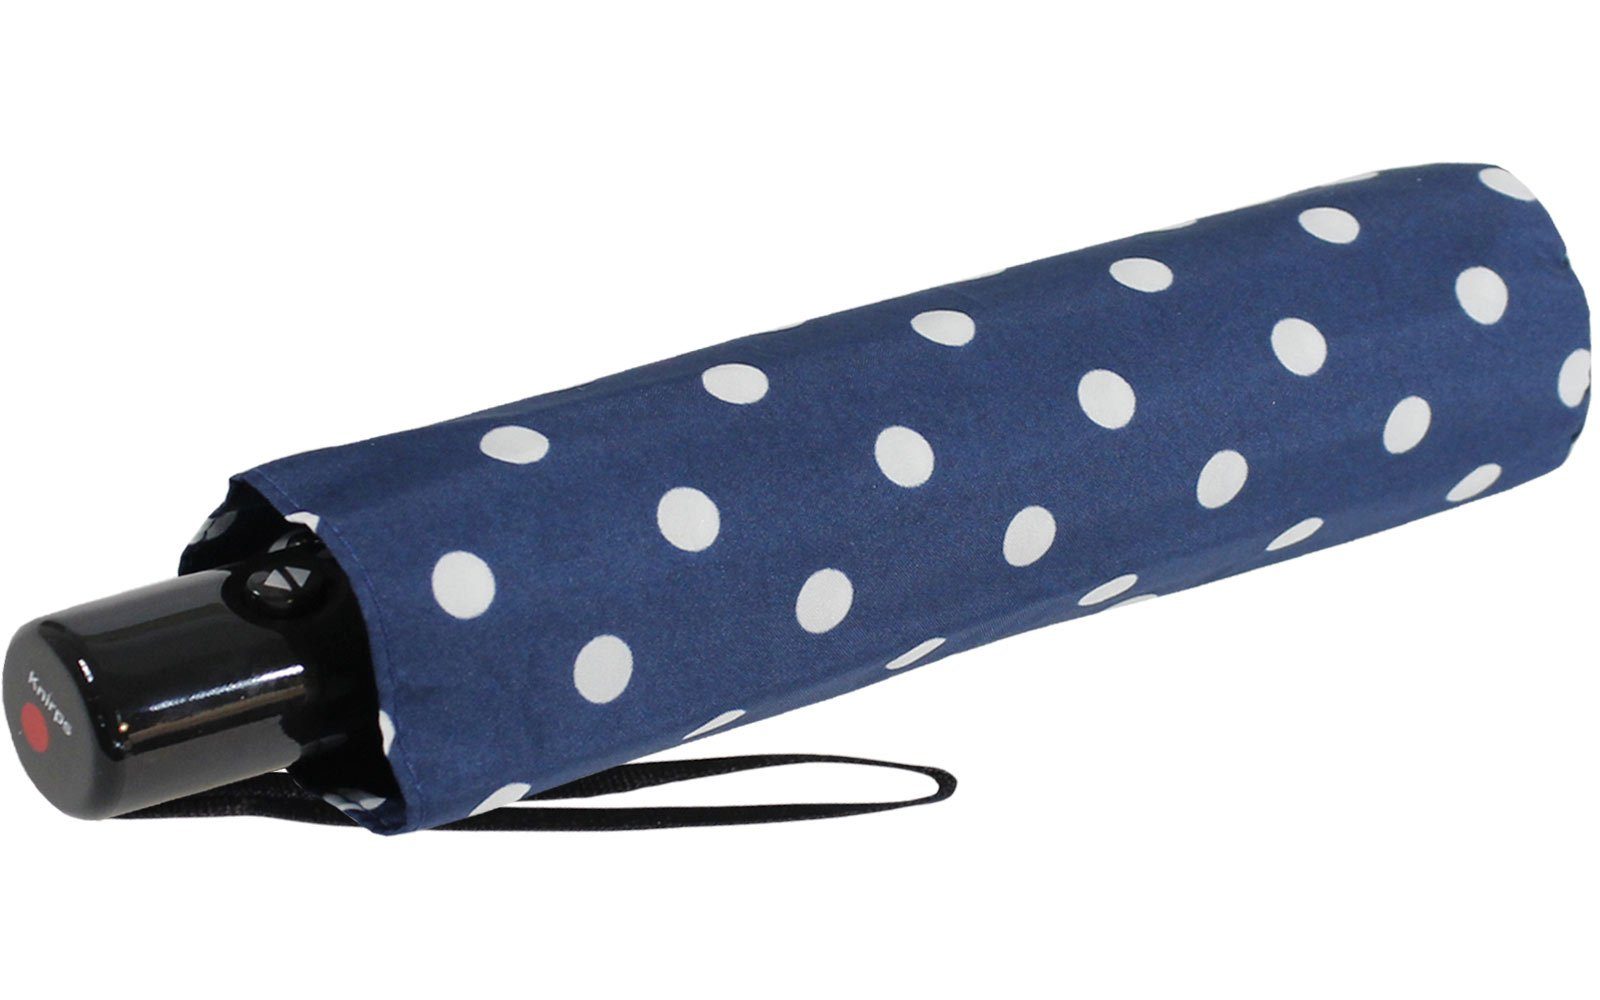 Knirps® Taschenregenschirm Duomatic mit Slim jede Polka blau-weiß in Dots, immer - Auf-Zu-Automatik Tasche mit passt dabei